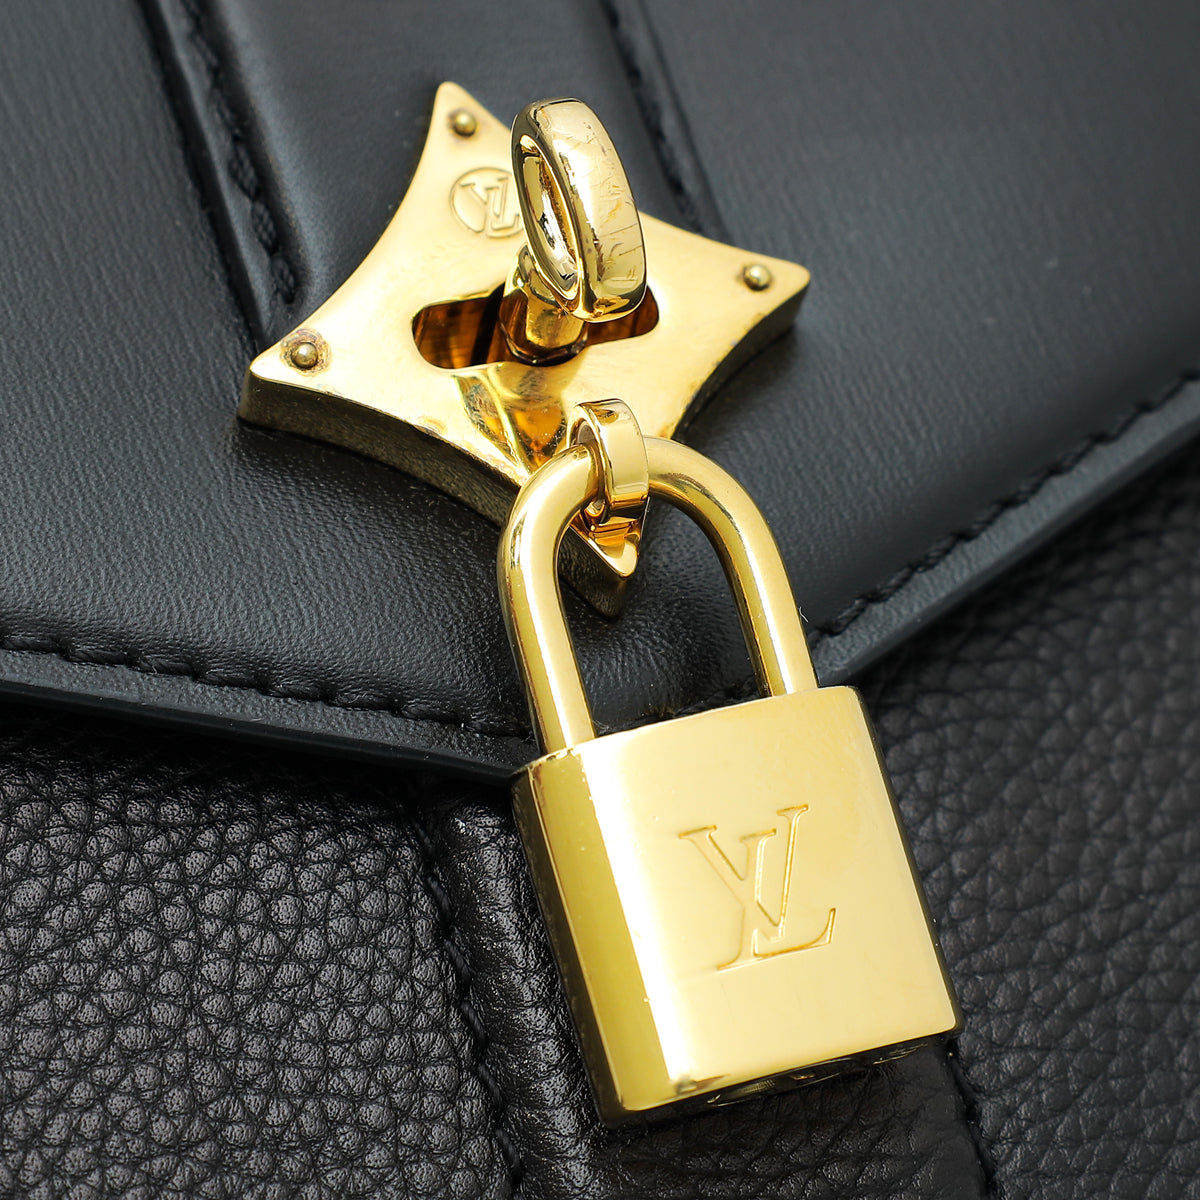 Louis Vuitton Black Rose Des Vents Leather PM Bag w /A Initial